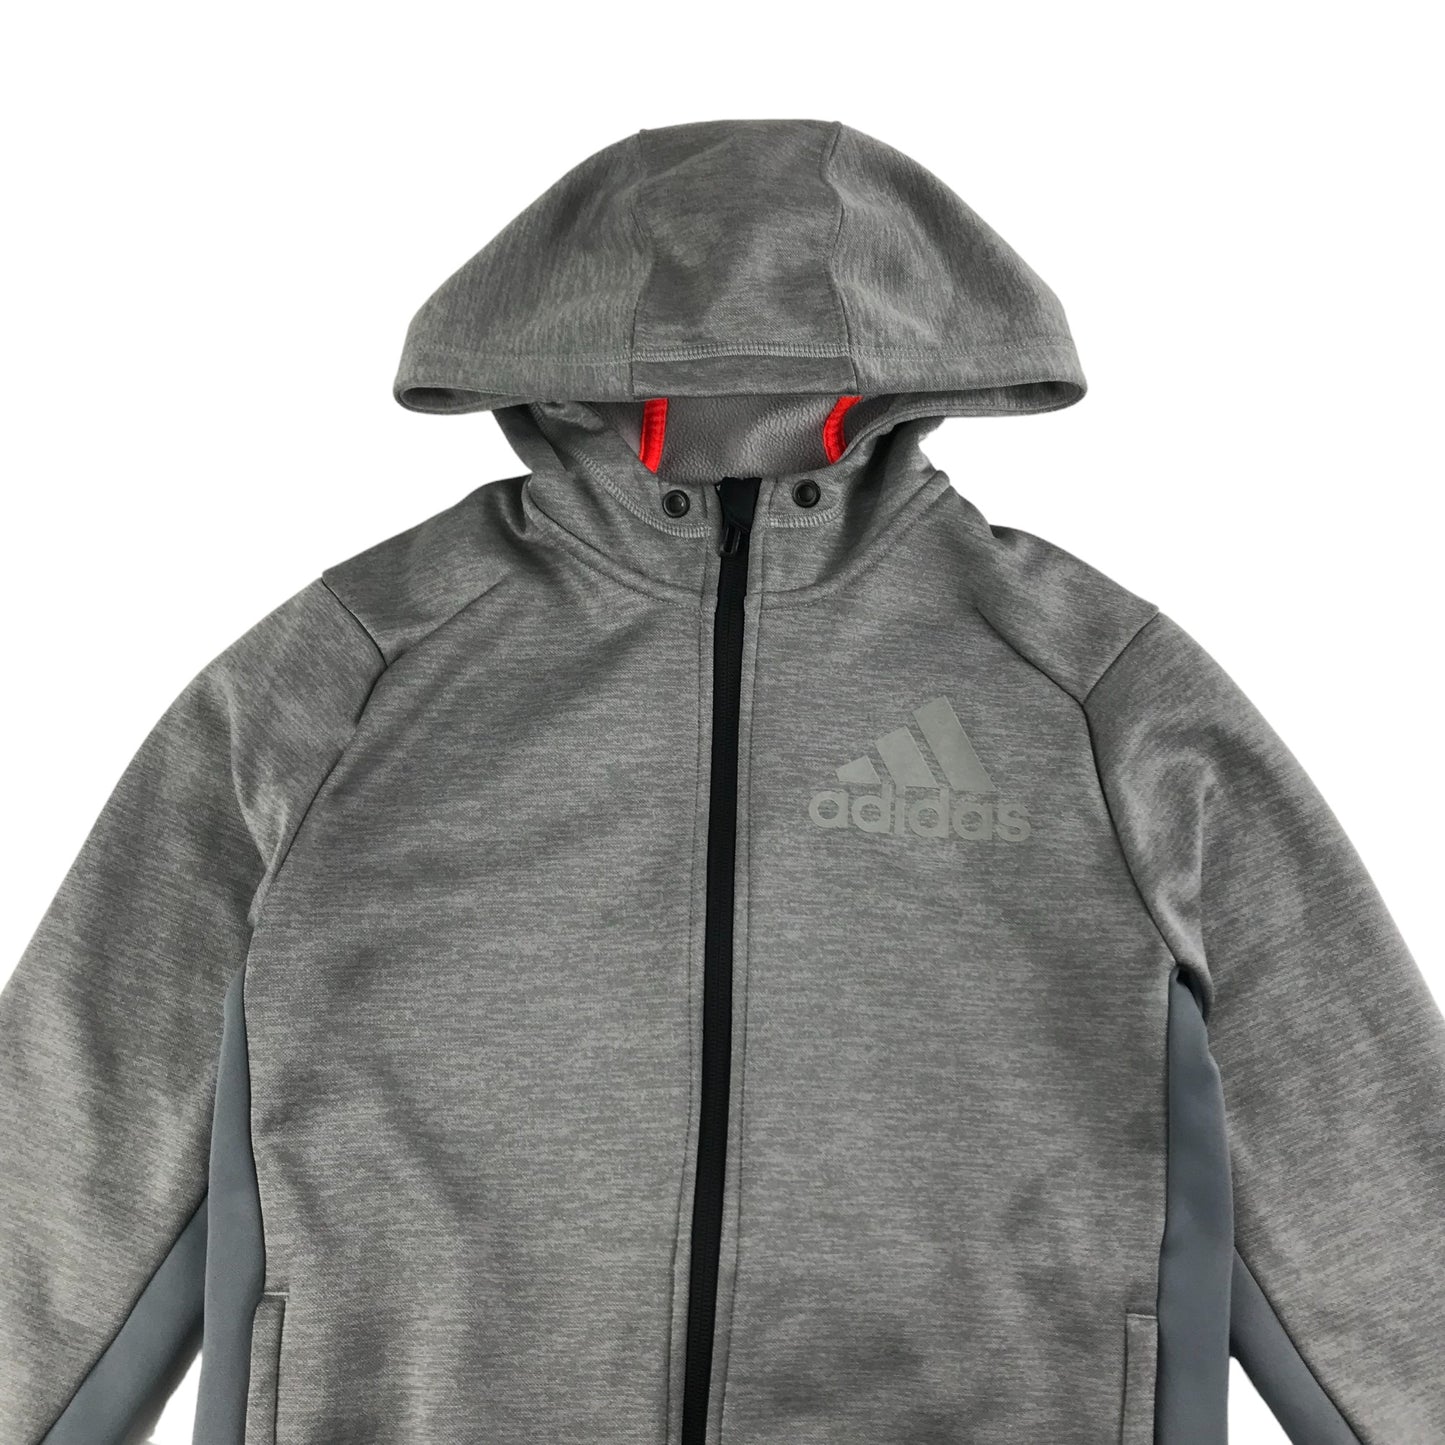 Adidas Hoodie Age 10-12 Grey Sporty Full Zipper